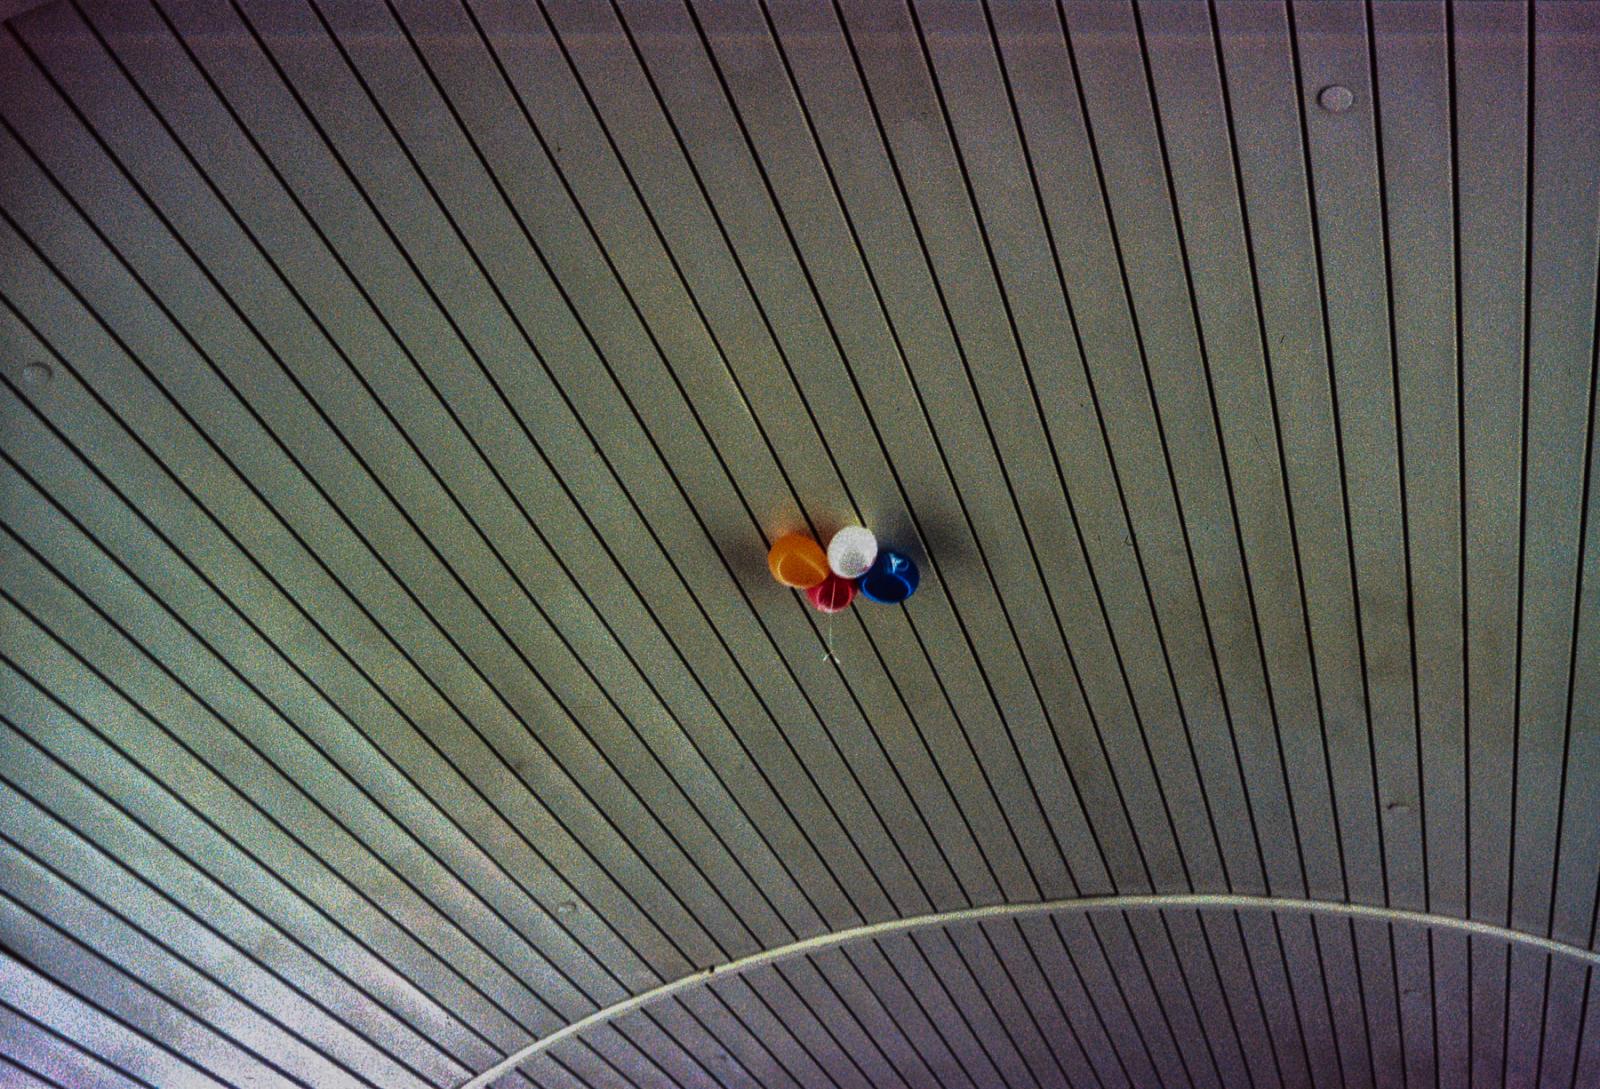 Image from Aesthetic - Penn Station, New York.